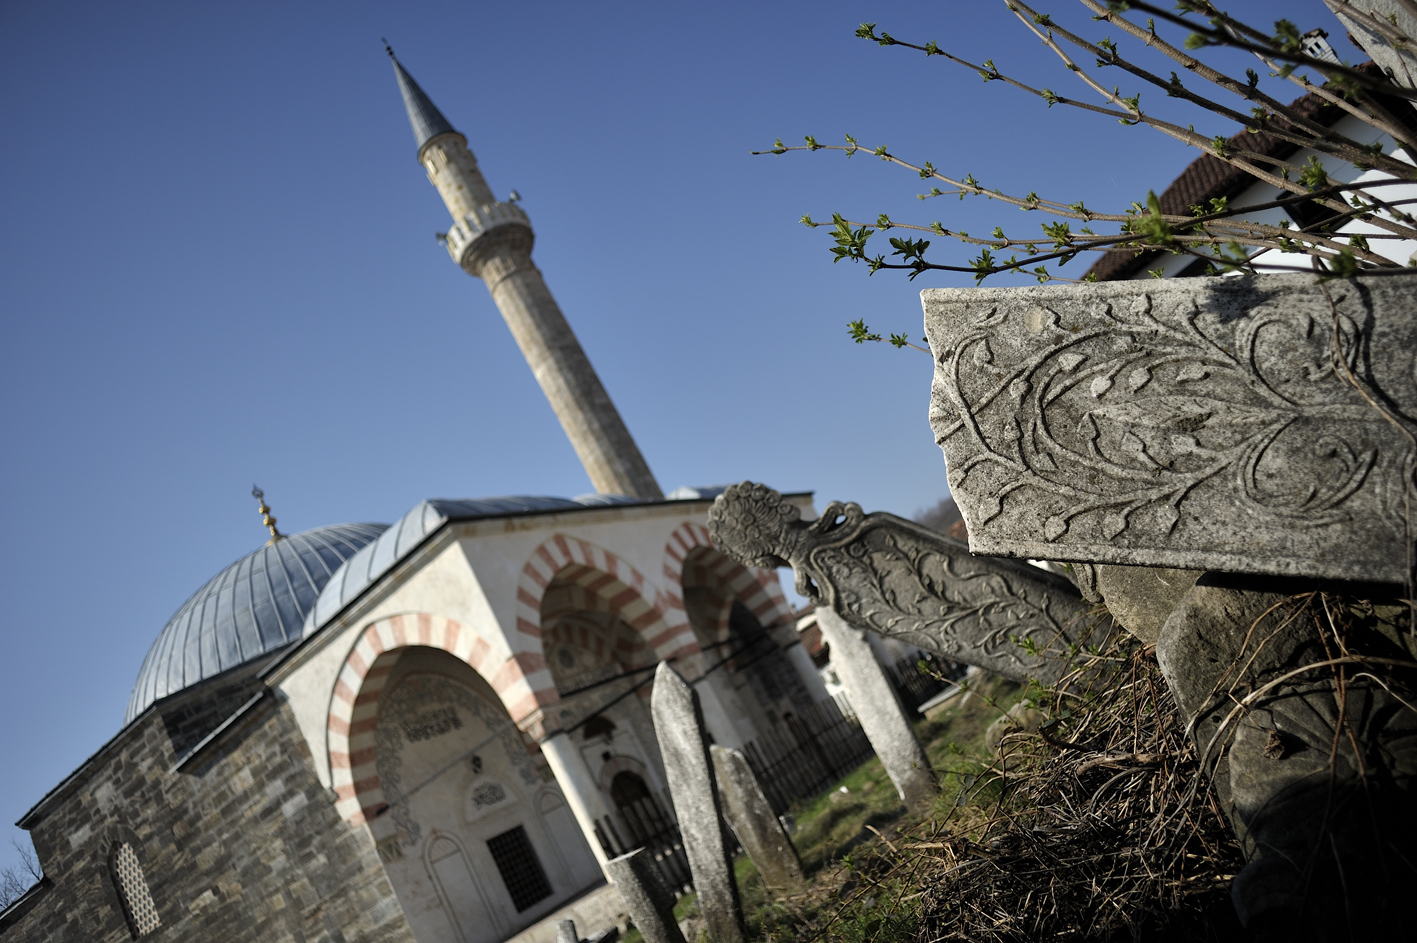 Hadum Moschee und Friedhof in Gjakova, Kosovo. © Tobias Strahl